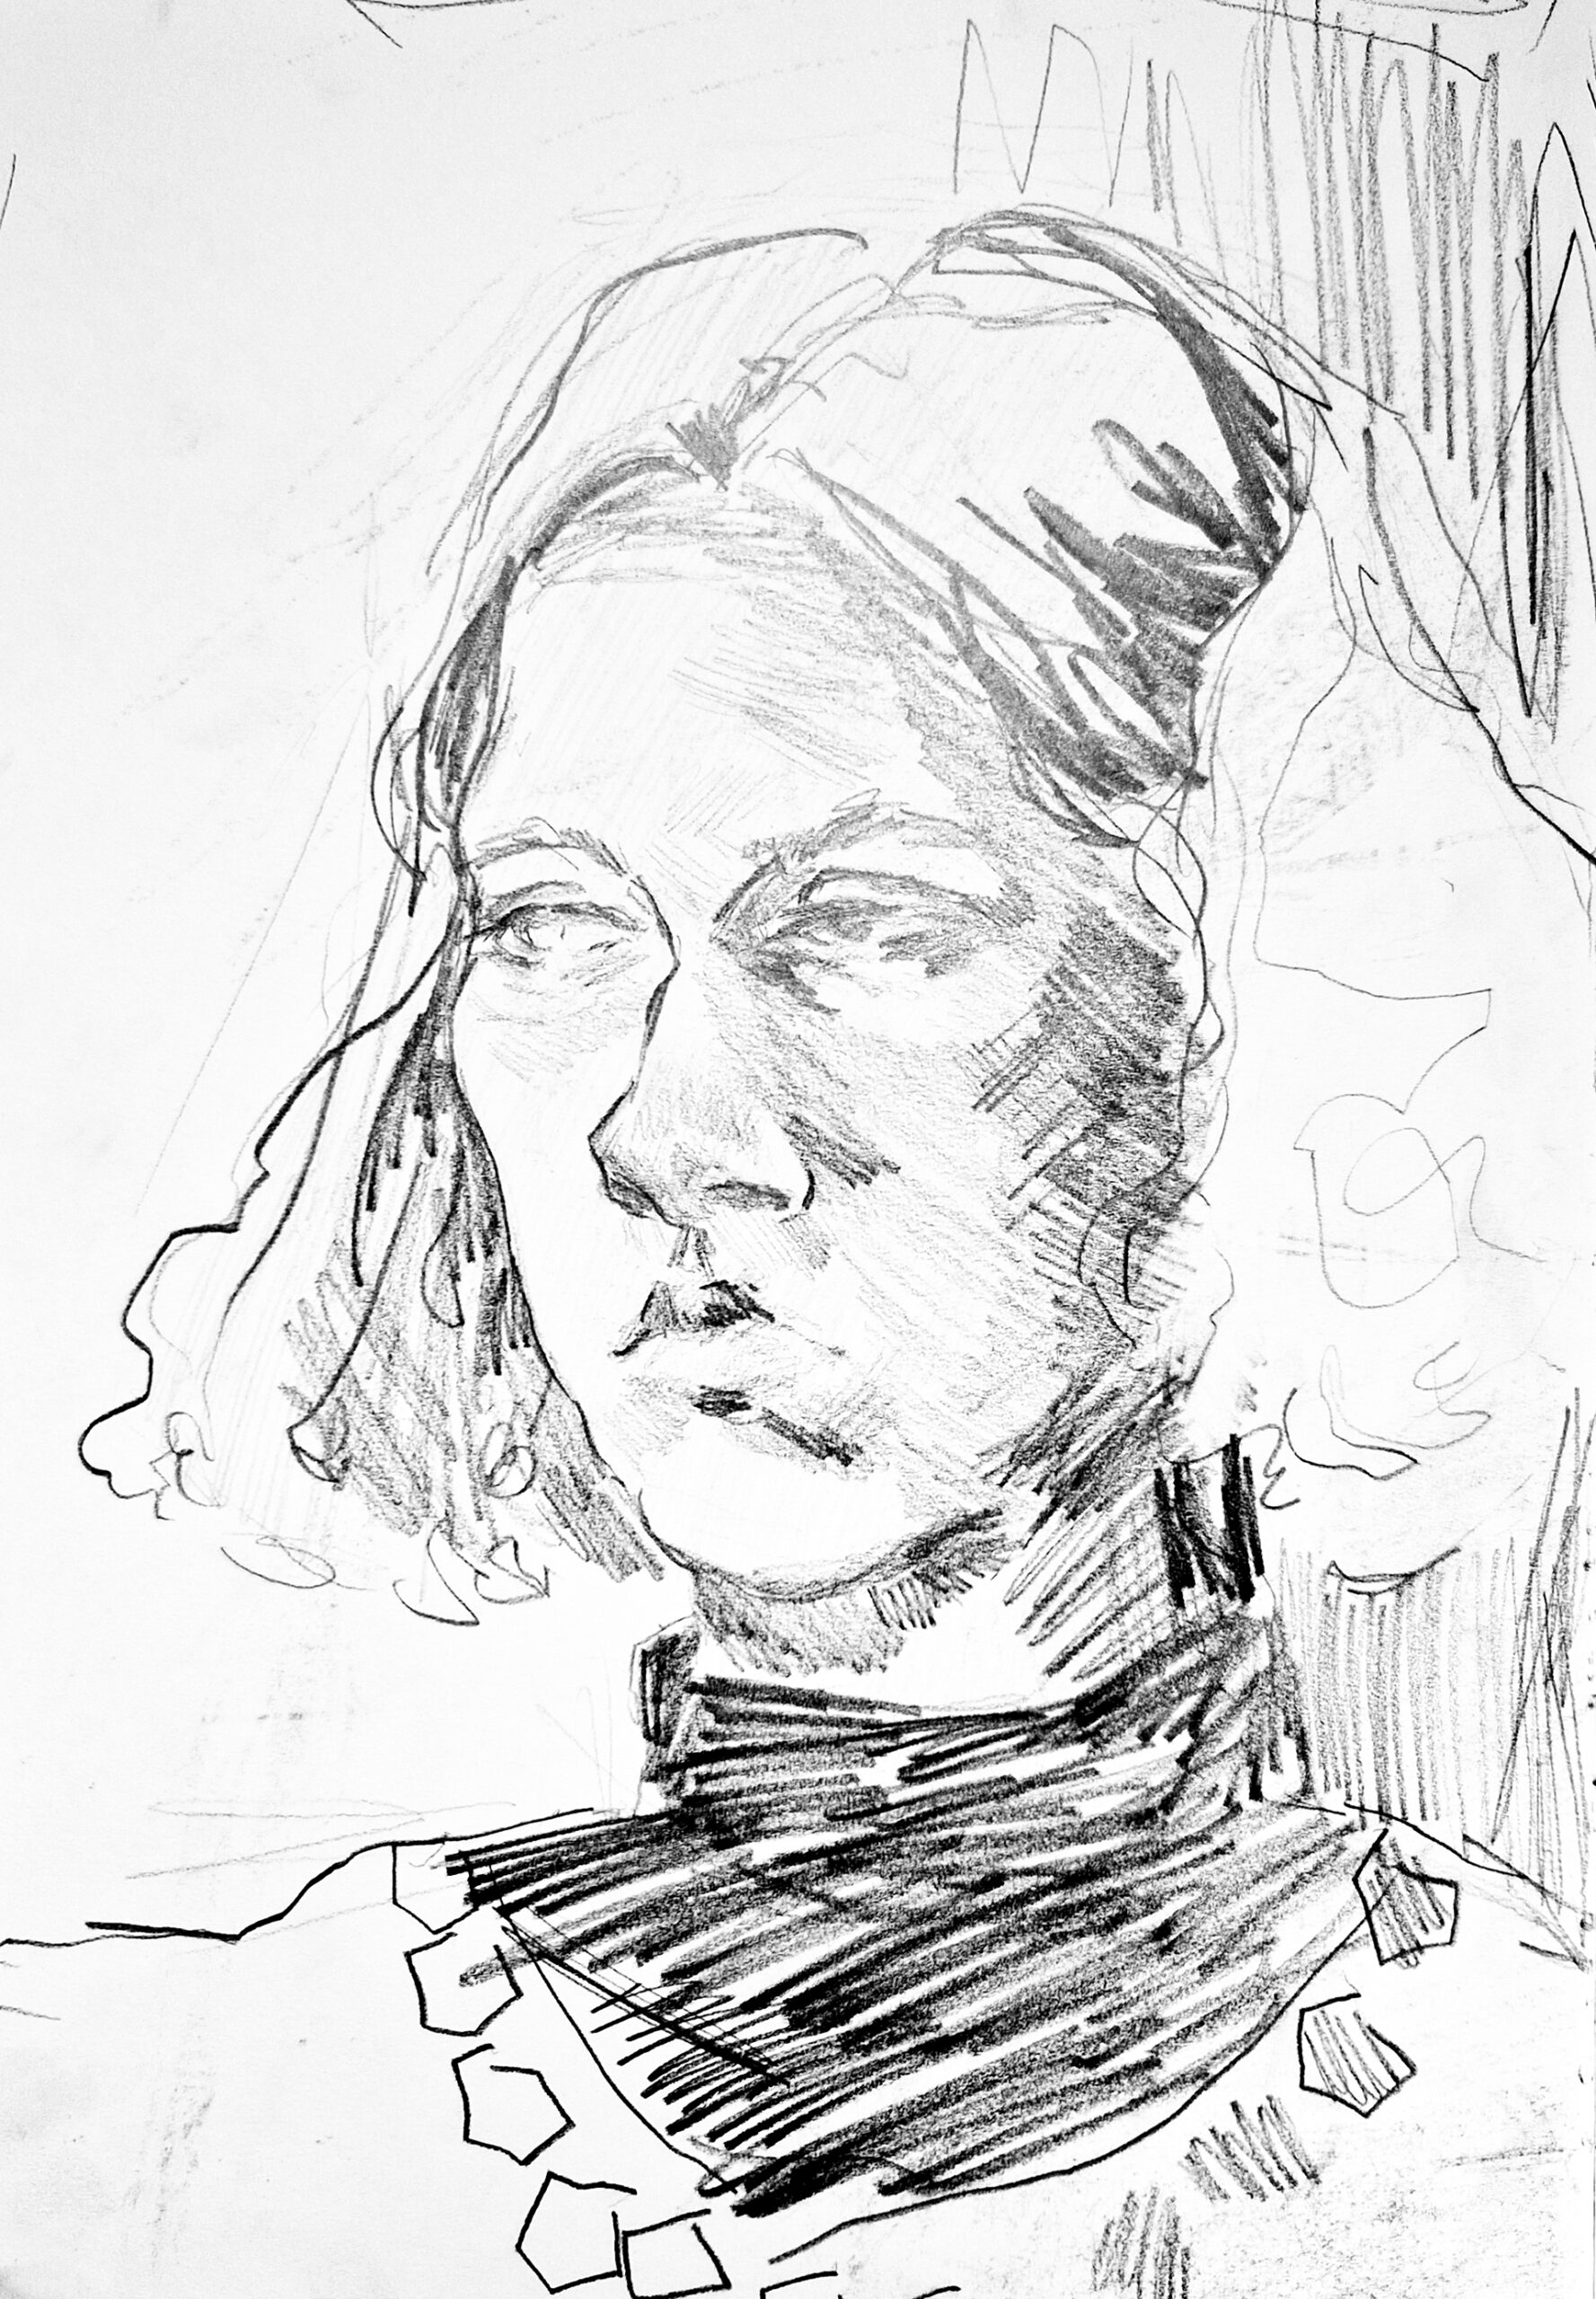 Zdjęcie przedstawia rysunkowy portret kobiety, wykonany ołówkiem na formacie papieru 21x30 cm.